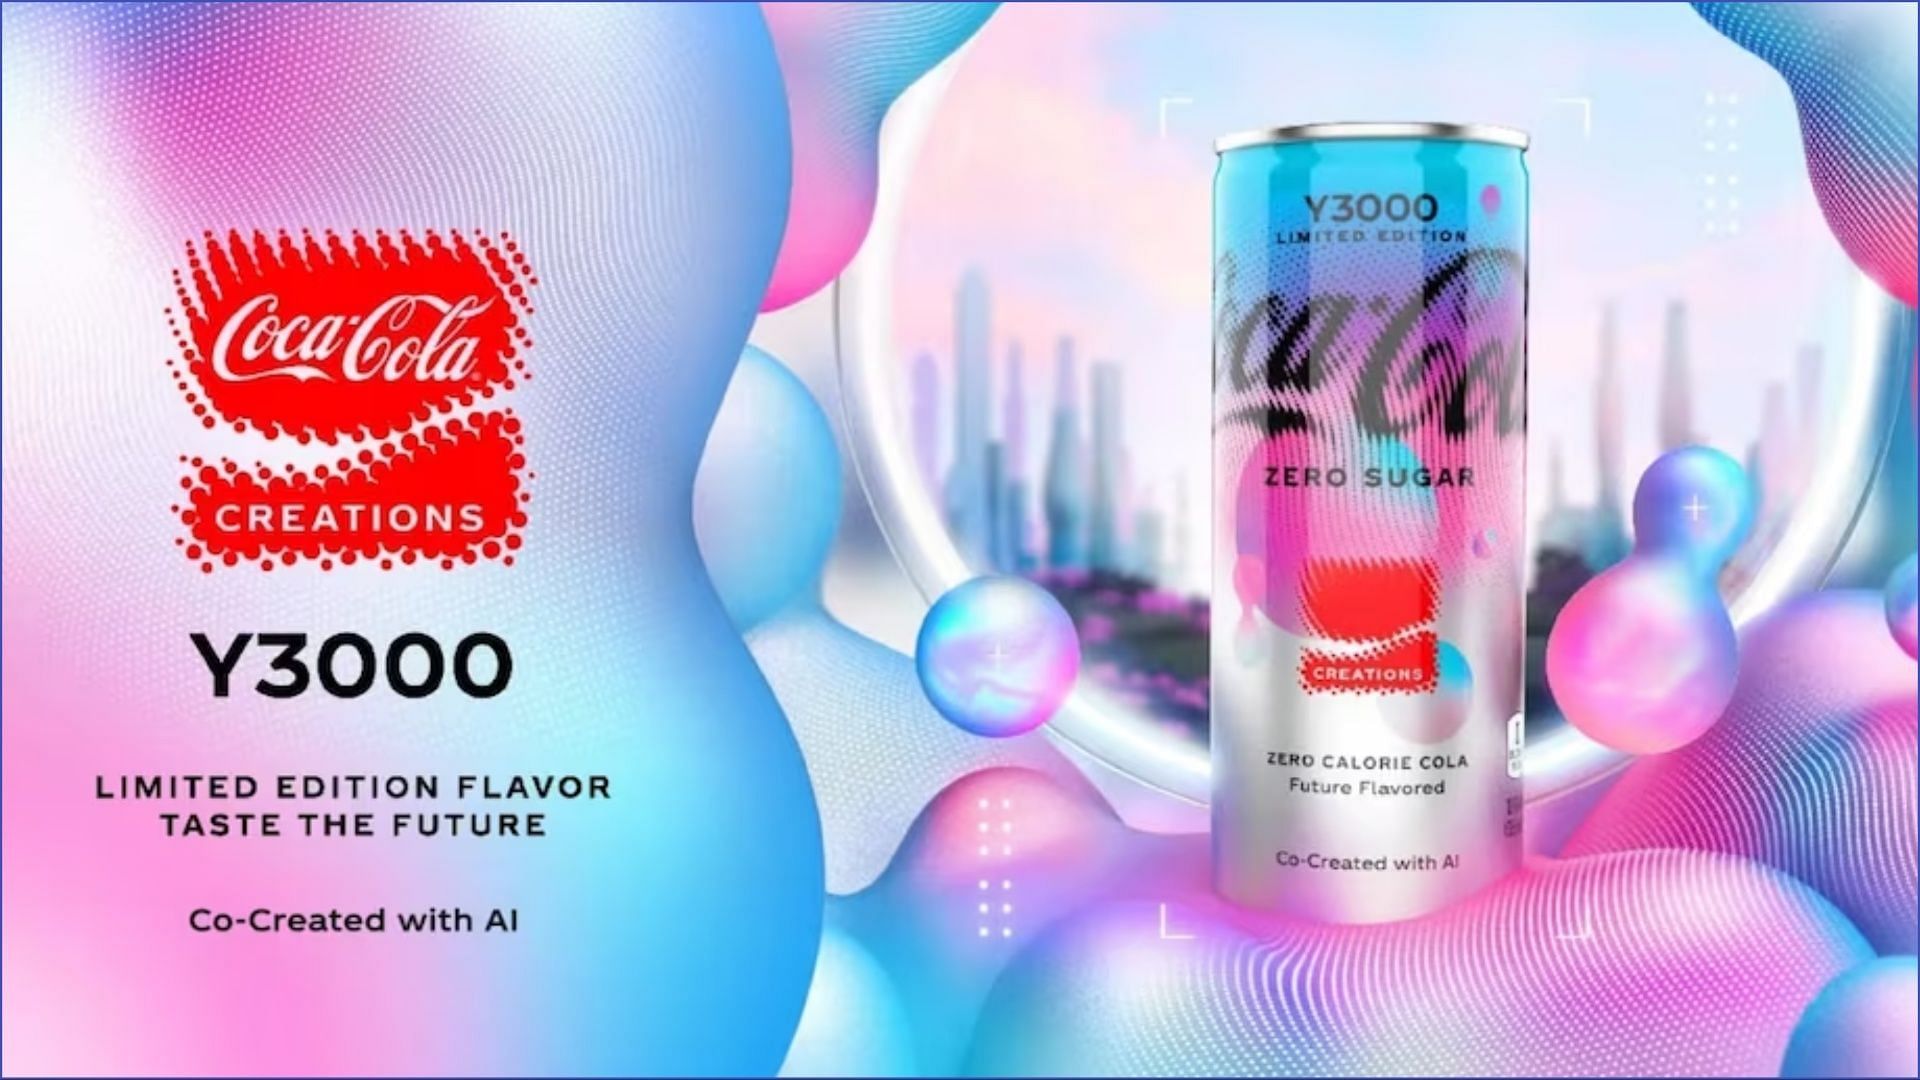 Coca-Cola introduces a new secret flavor Coca-Cola Y3000 Zero Sugar (Image via Coca-Cola)